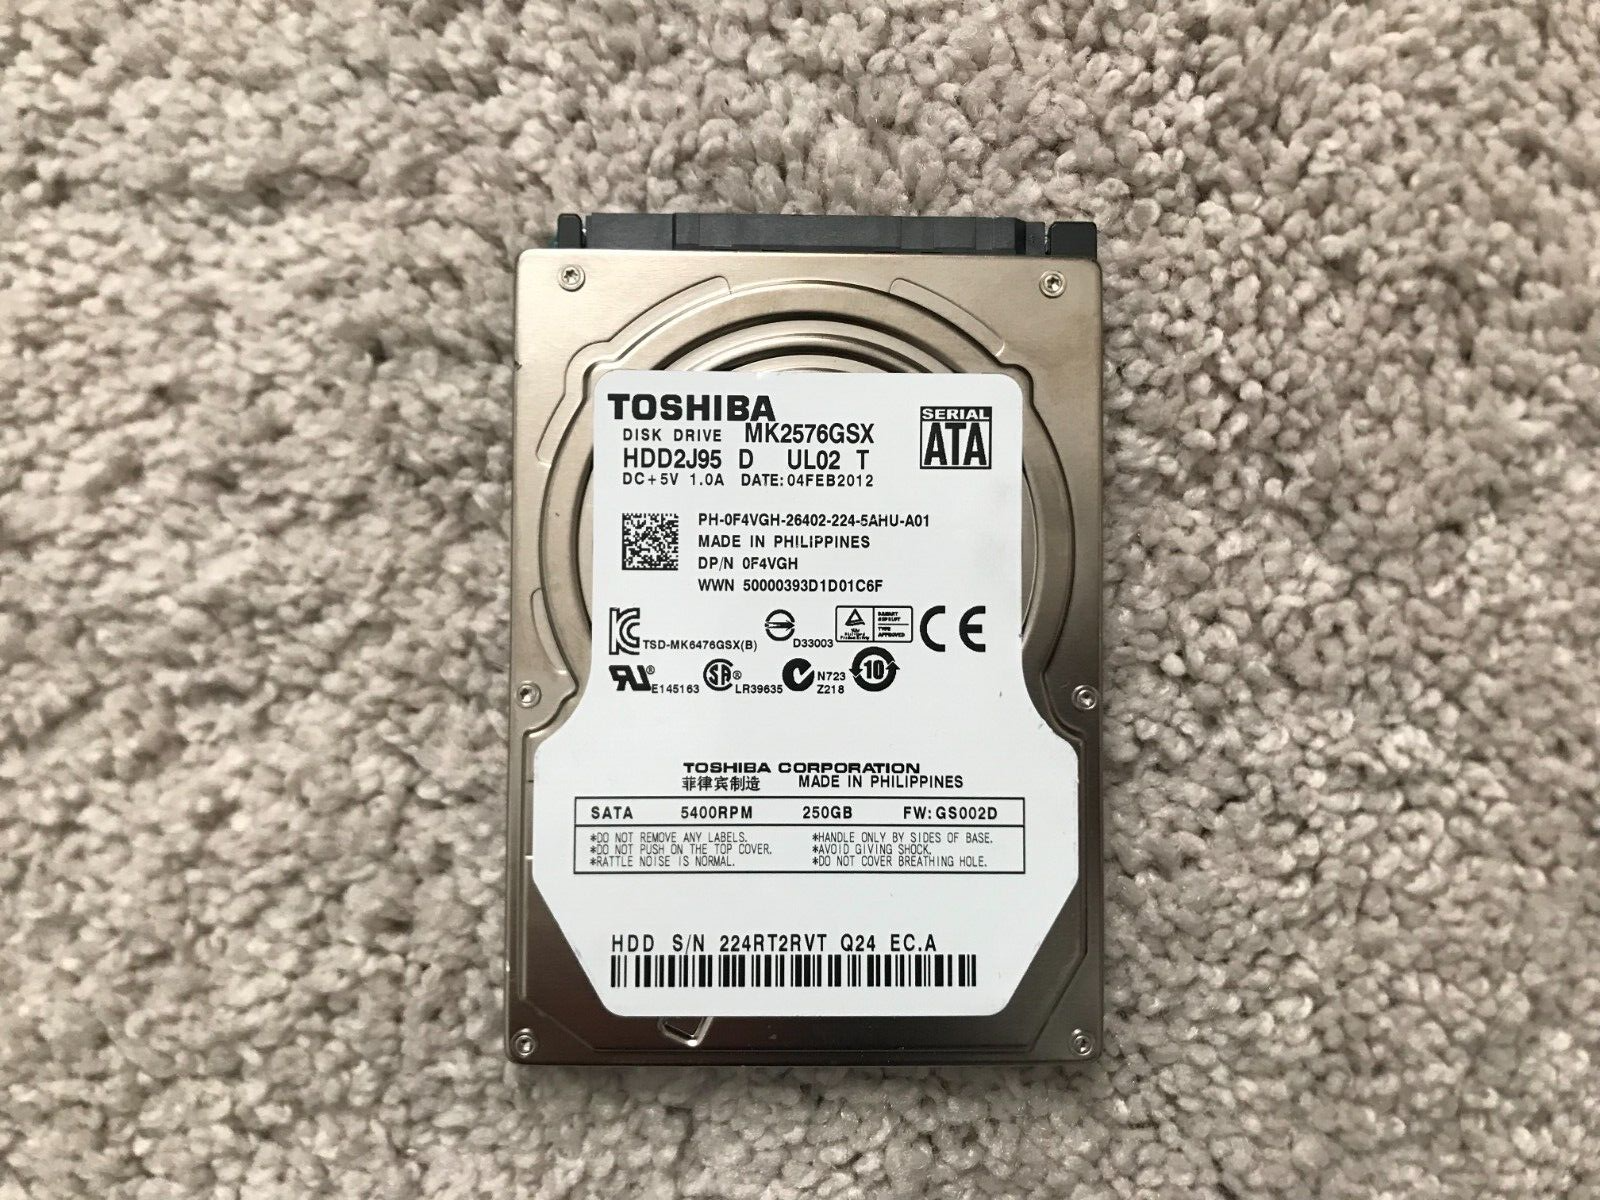 Toshiba MK2576GSX HDD2J95 D UL02 T 250GB Sata  Laptop  Hard Drive OF4VGH - $9.99